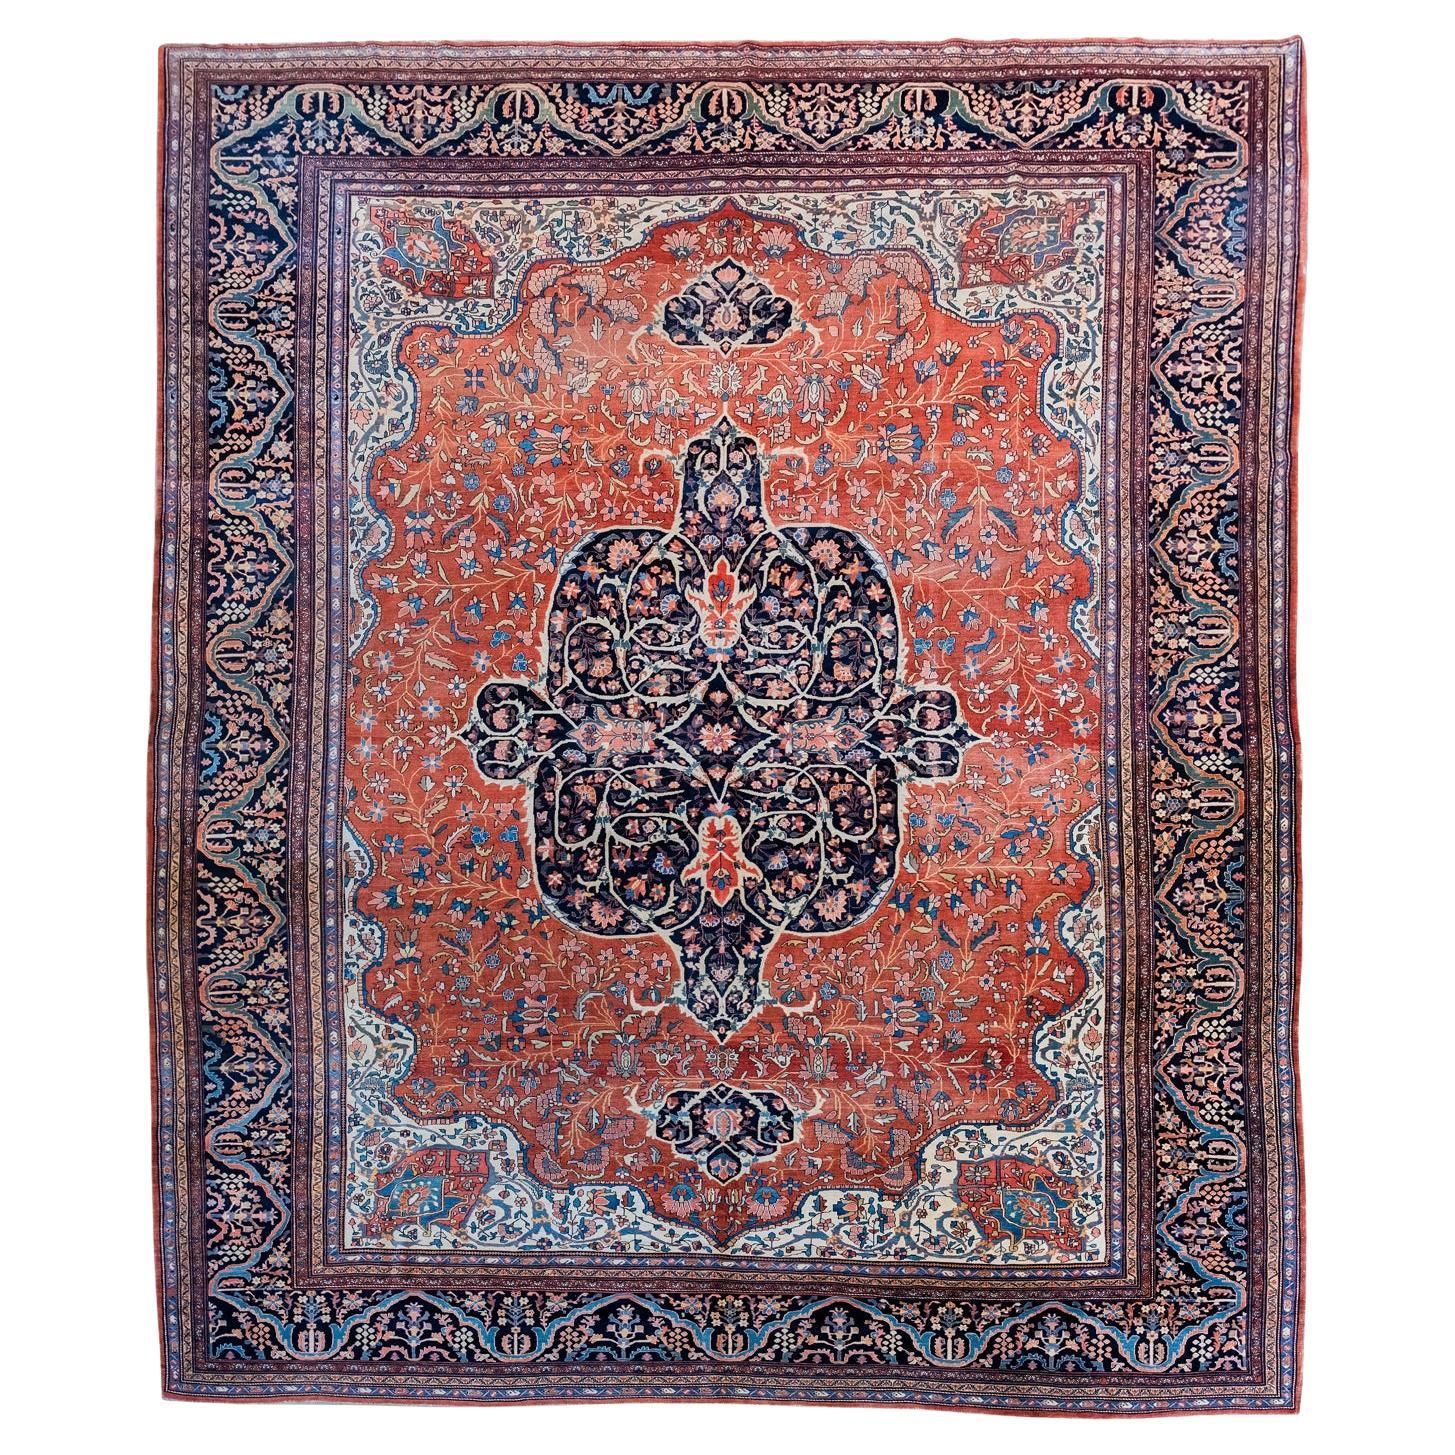 Antique Persian Farahan Carpet, Red, Orange, Indigo, 10’ x 14’